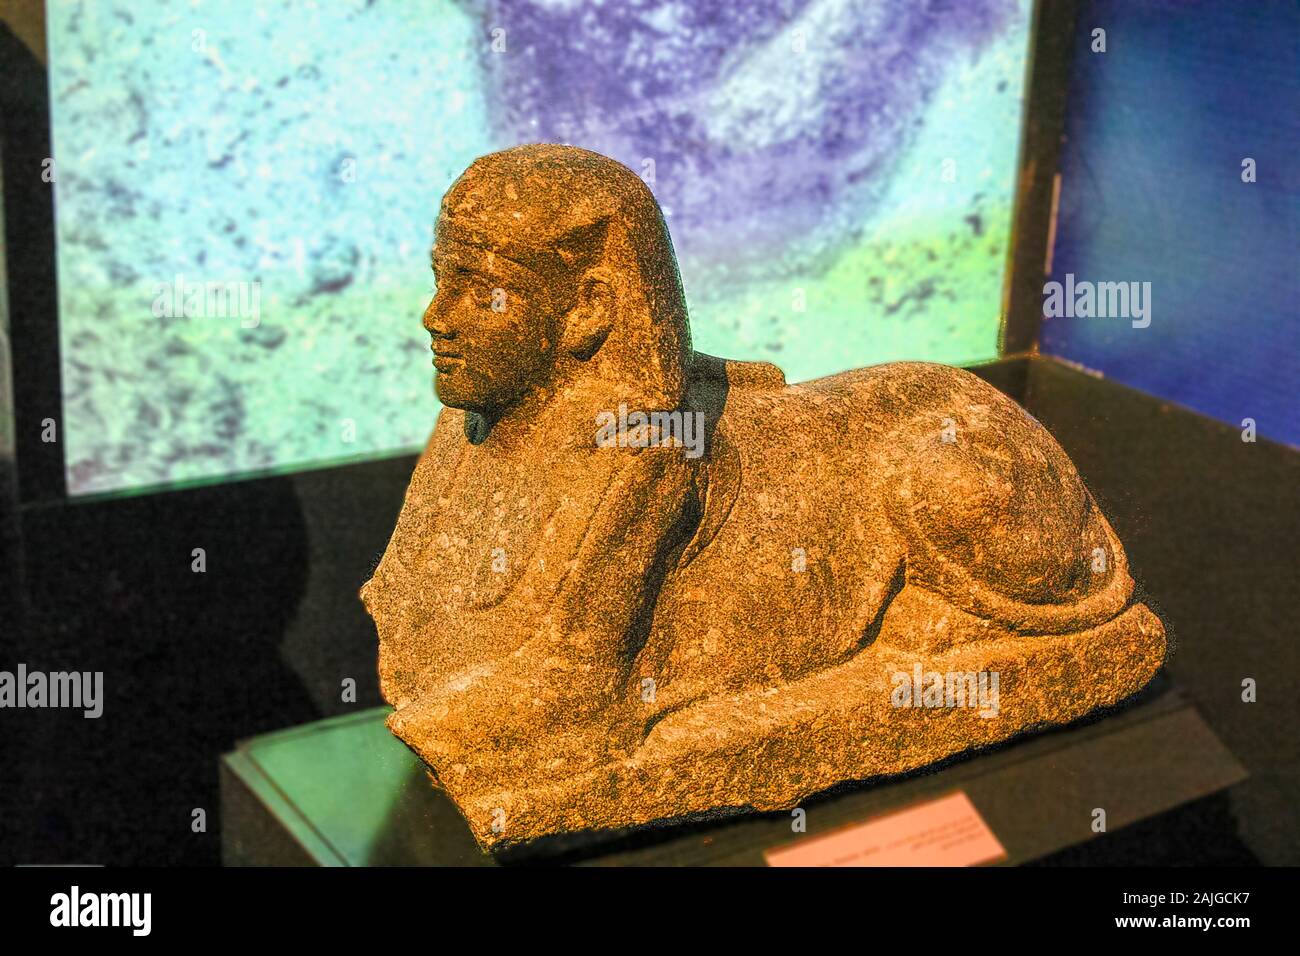 Egypte, Alexandrie, Musée National, un sphinx. Trouvés lors de fouilles sous-marines de Franck Goddio et affiché dans ses expositions. Banque D'Images